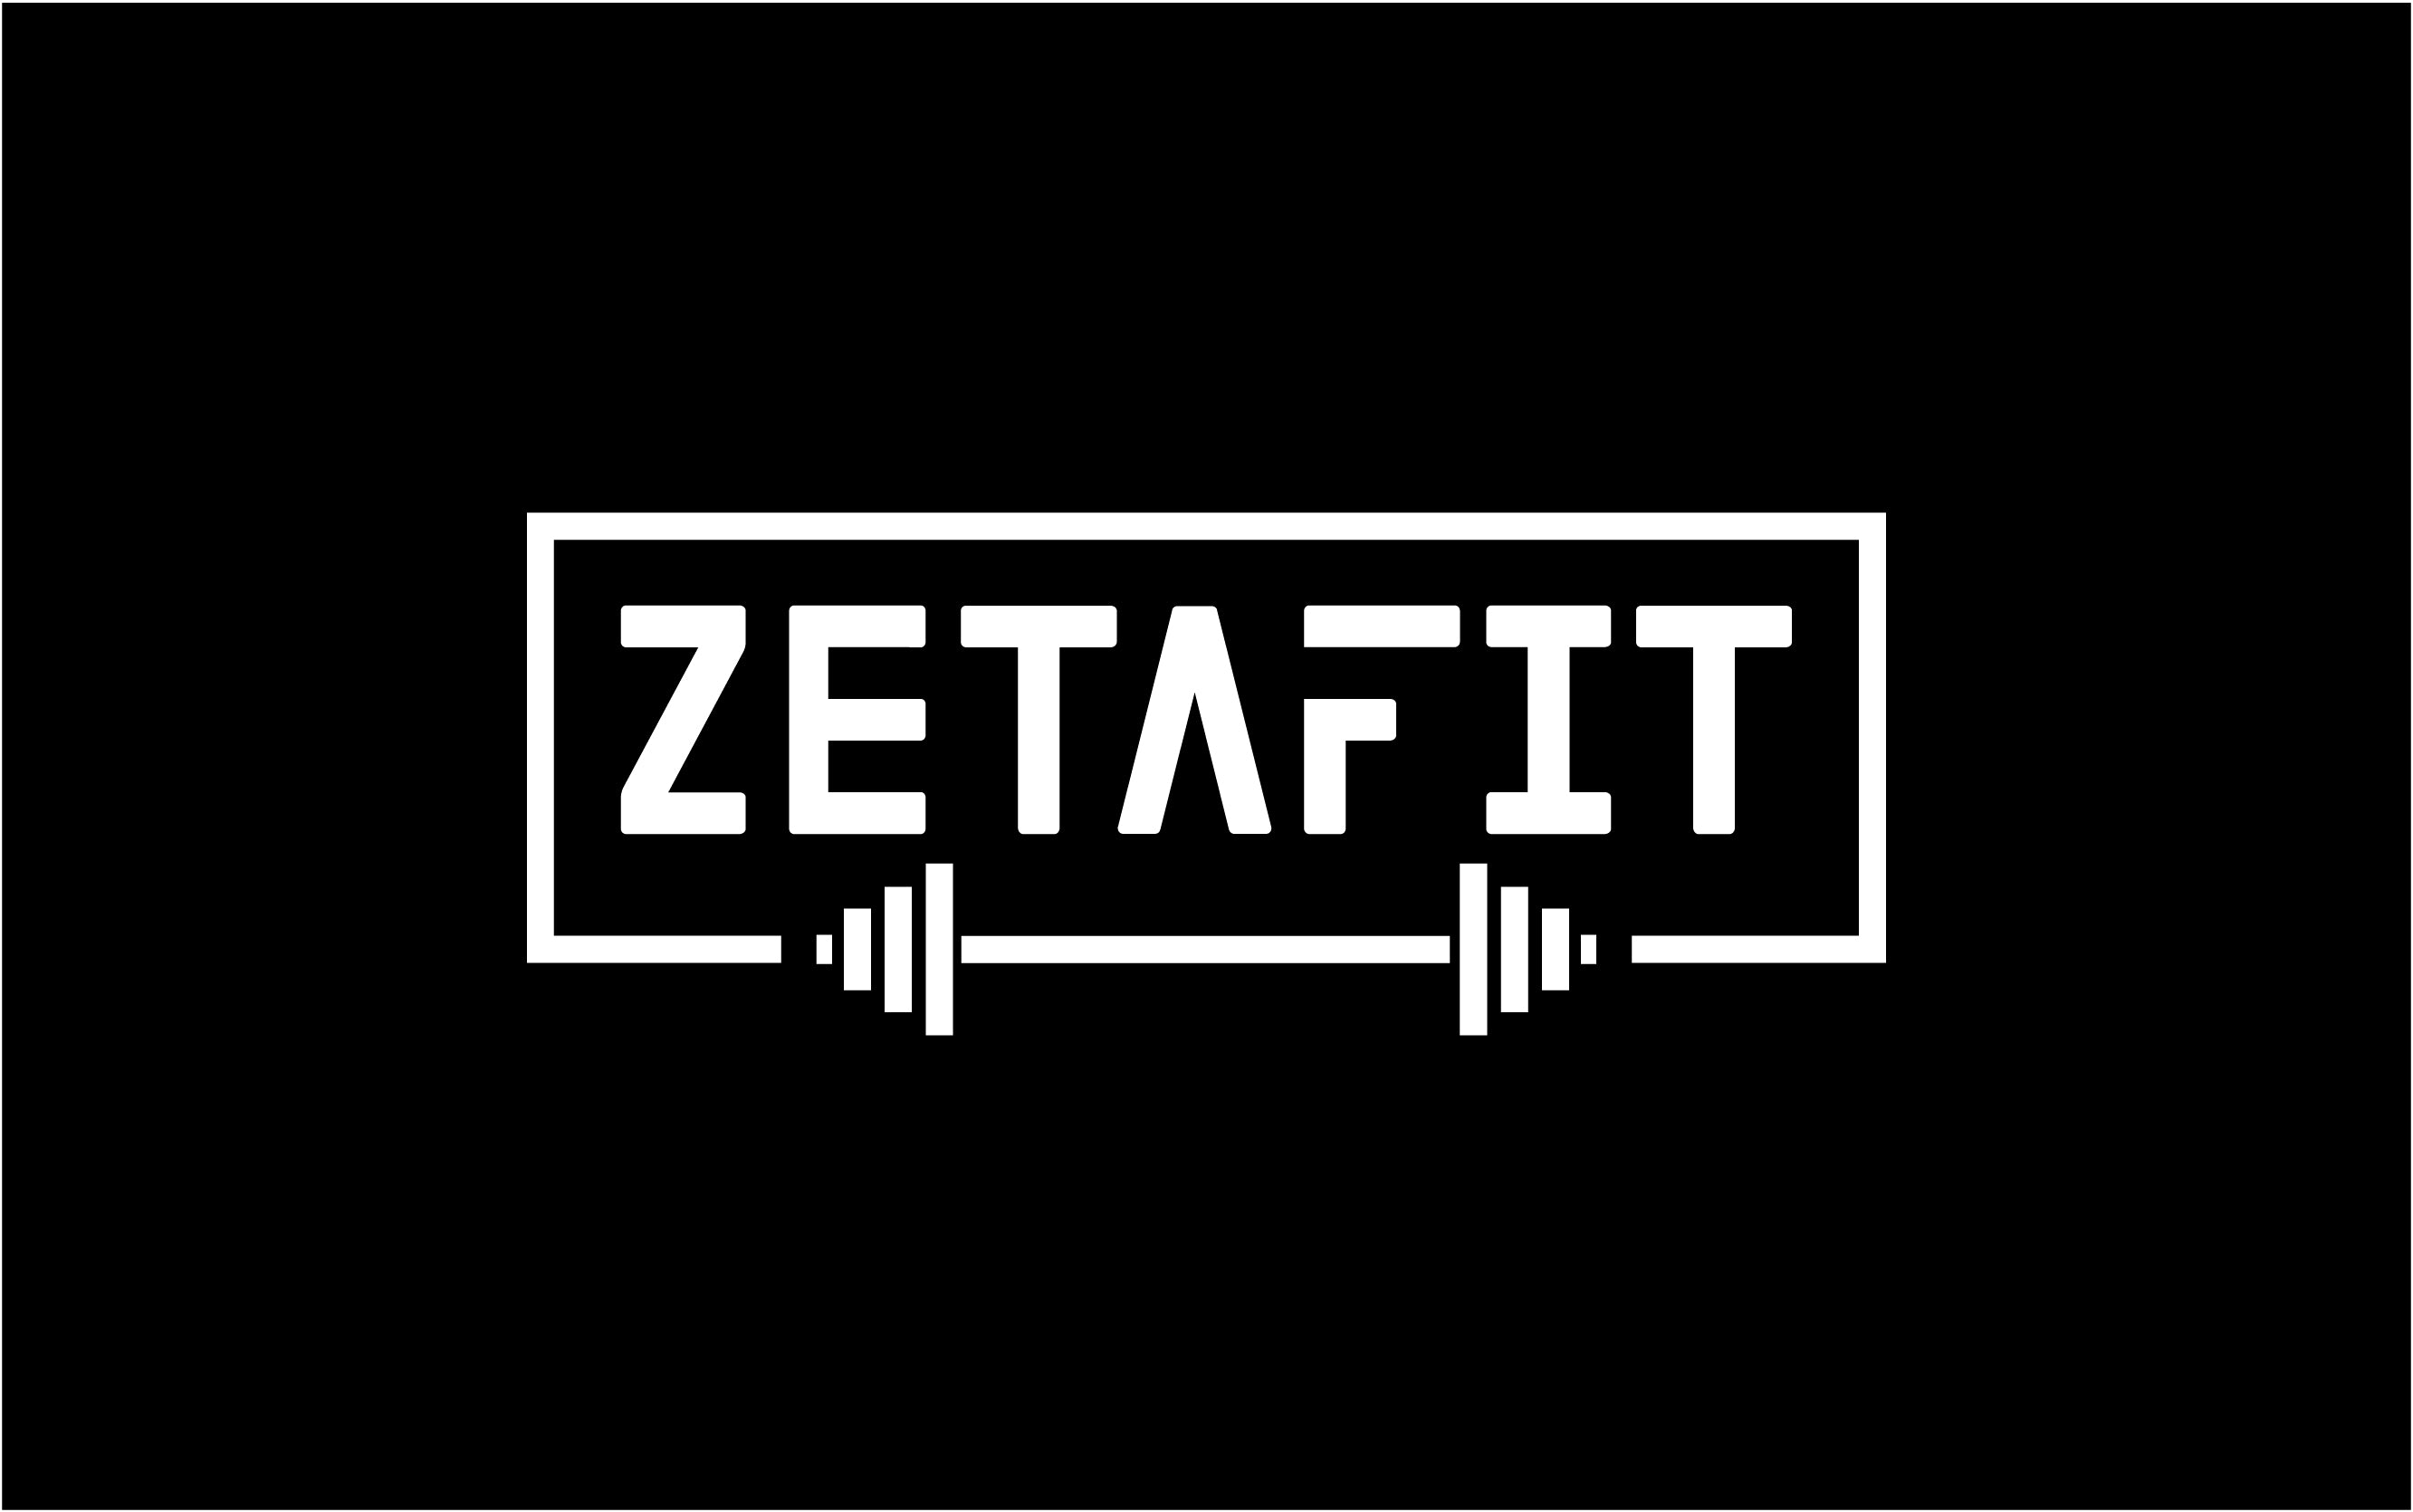 Zetafit